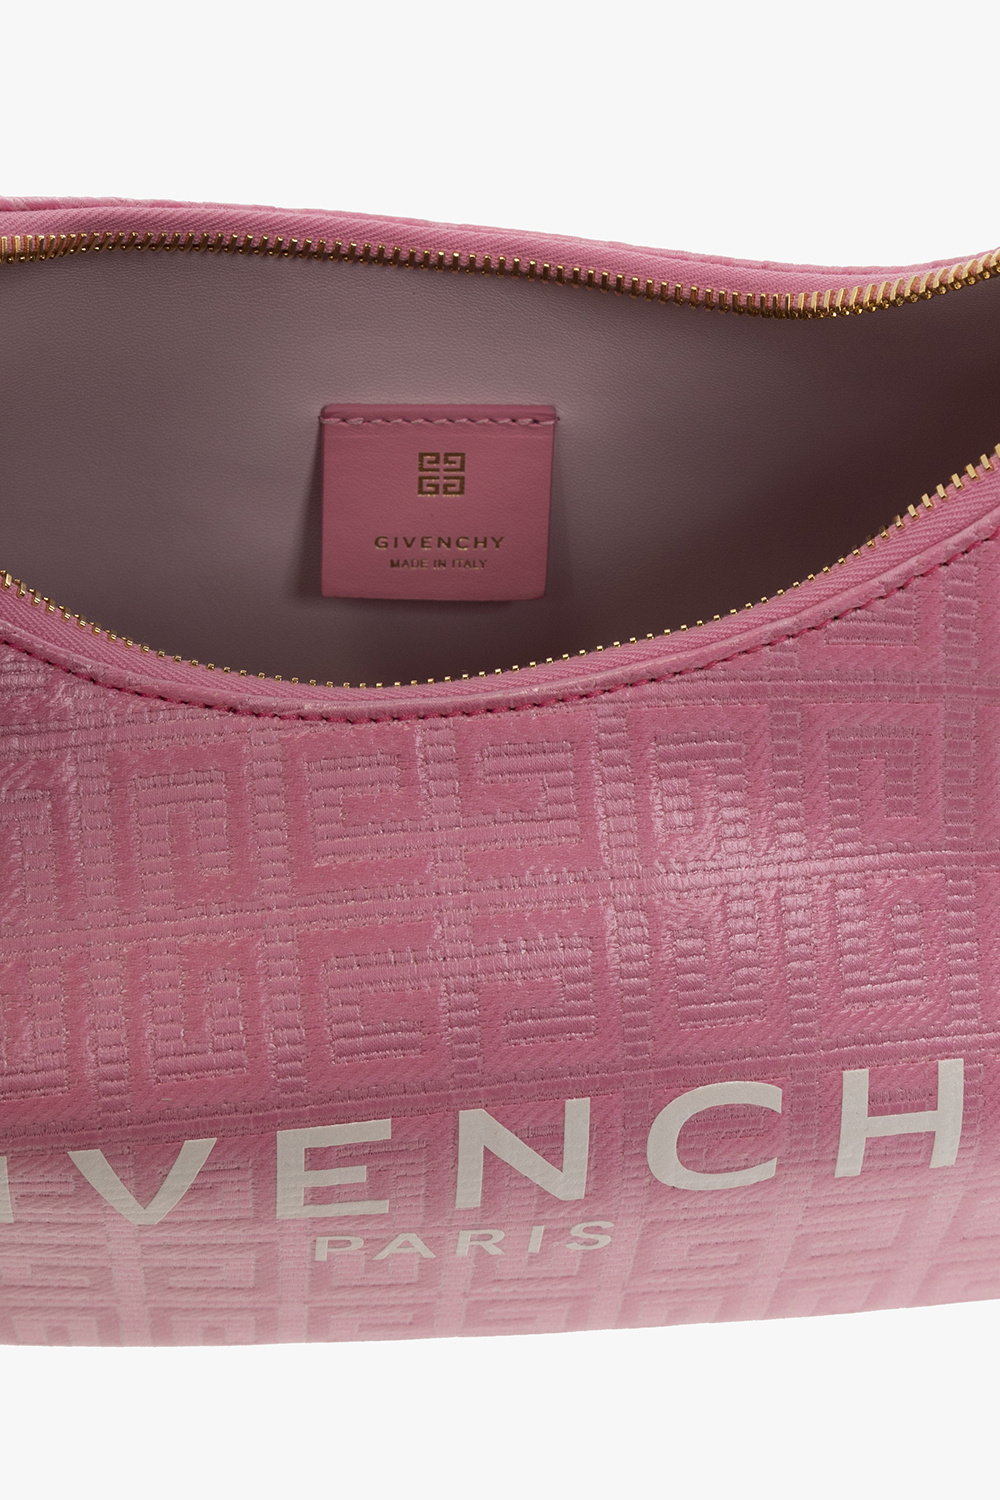 Givenchy ‘Moon Cut Out Small’ handbag